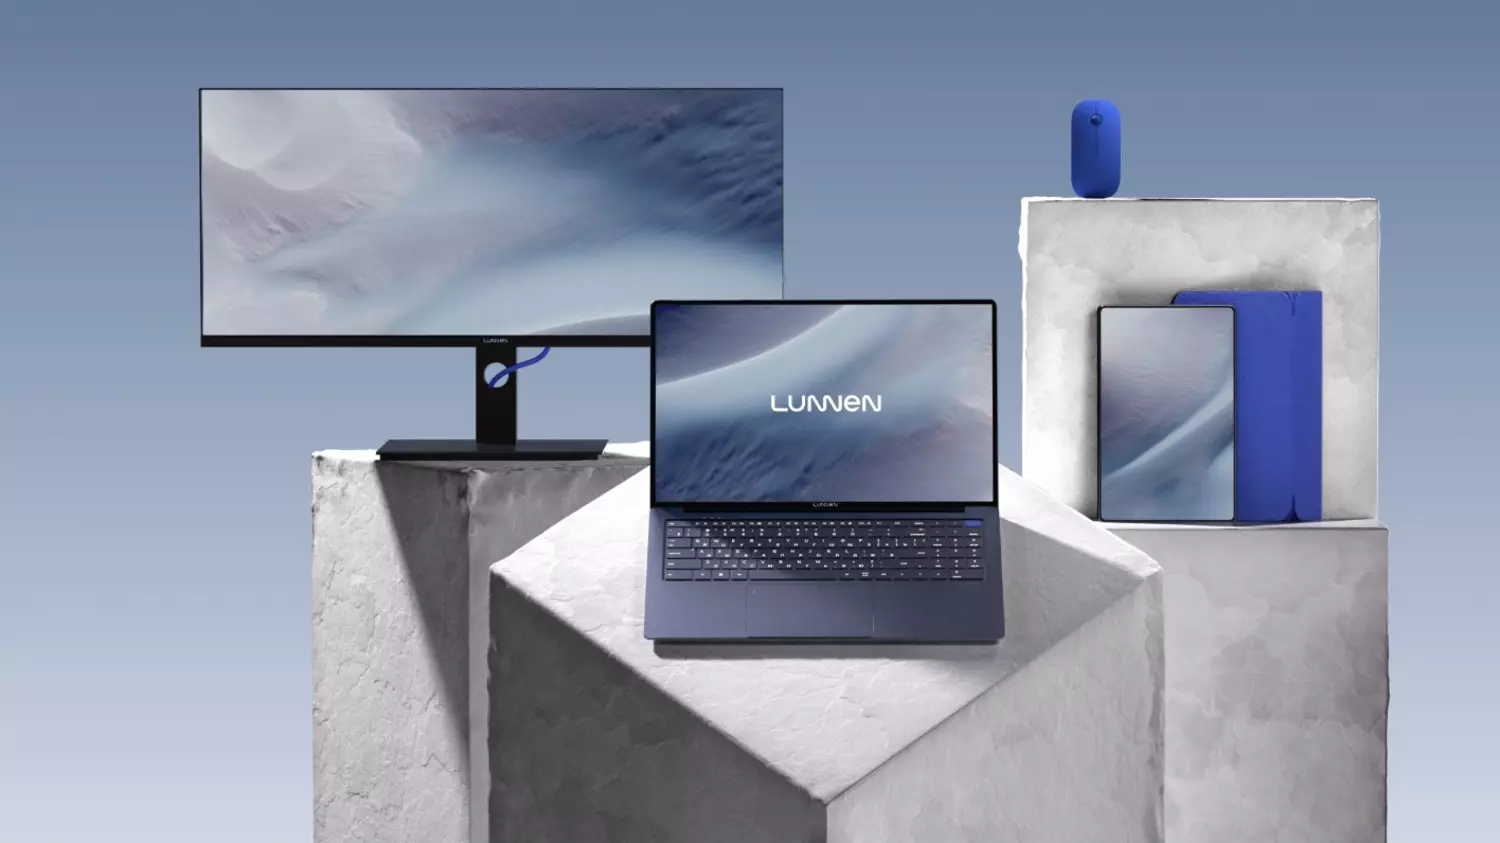 Ассортимент бренда будет расширен ноутбуками, настольными компьютерами, планшетами, мониторами и другими устройствами